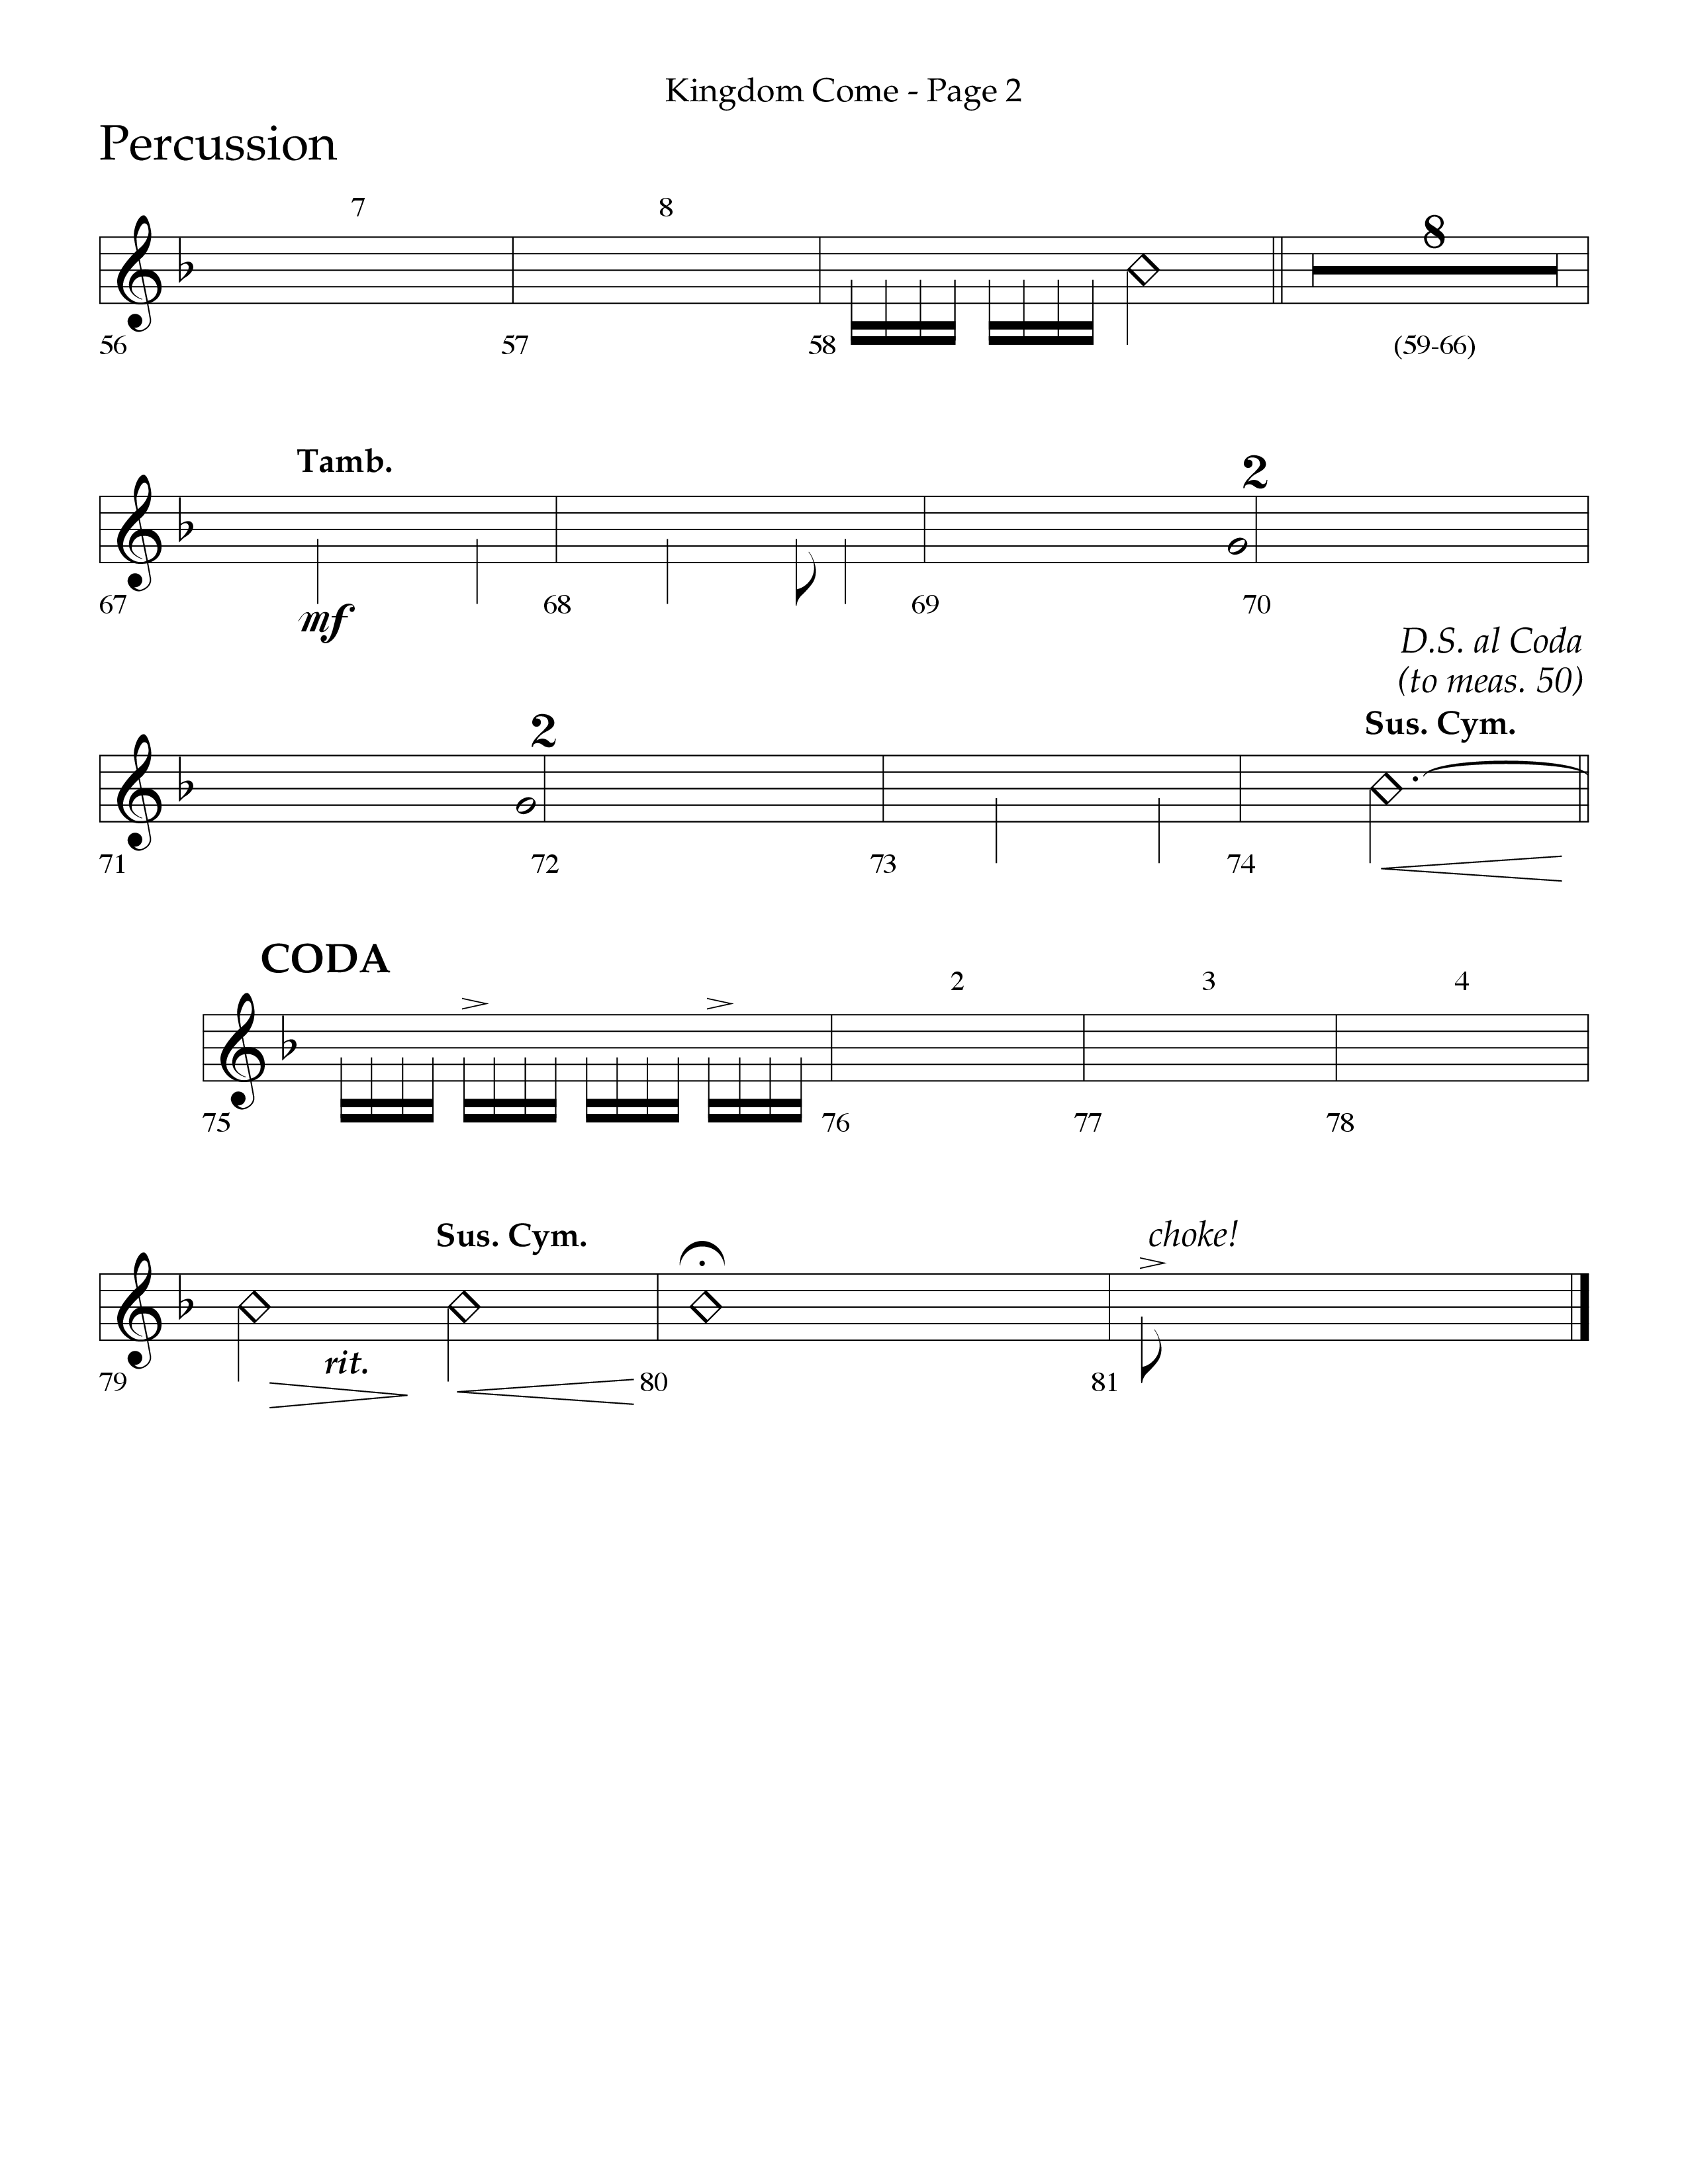 Kingdom Come (Choral Anthem SATB) Percussion (Lifeway Choral / Arr. Bradley Knight)